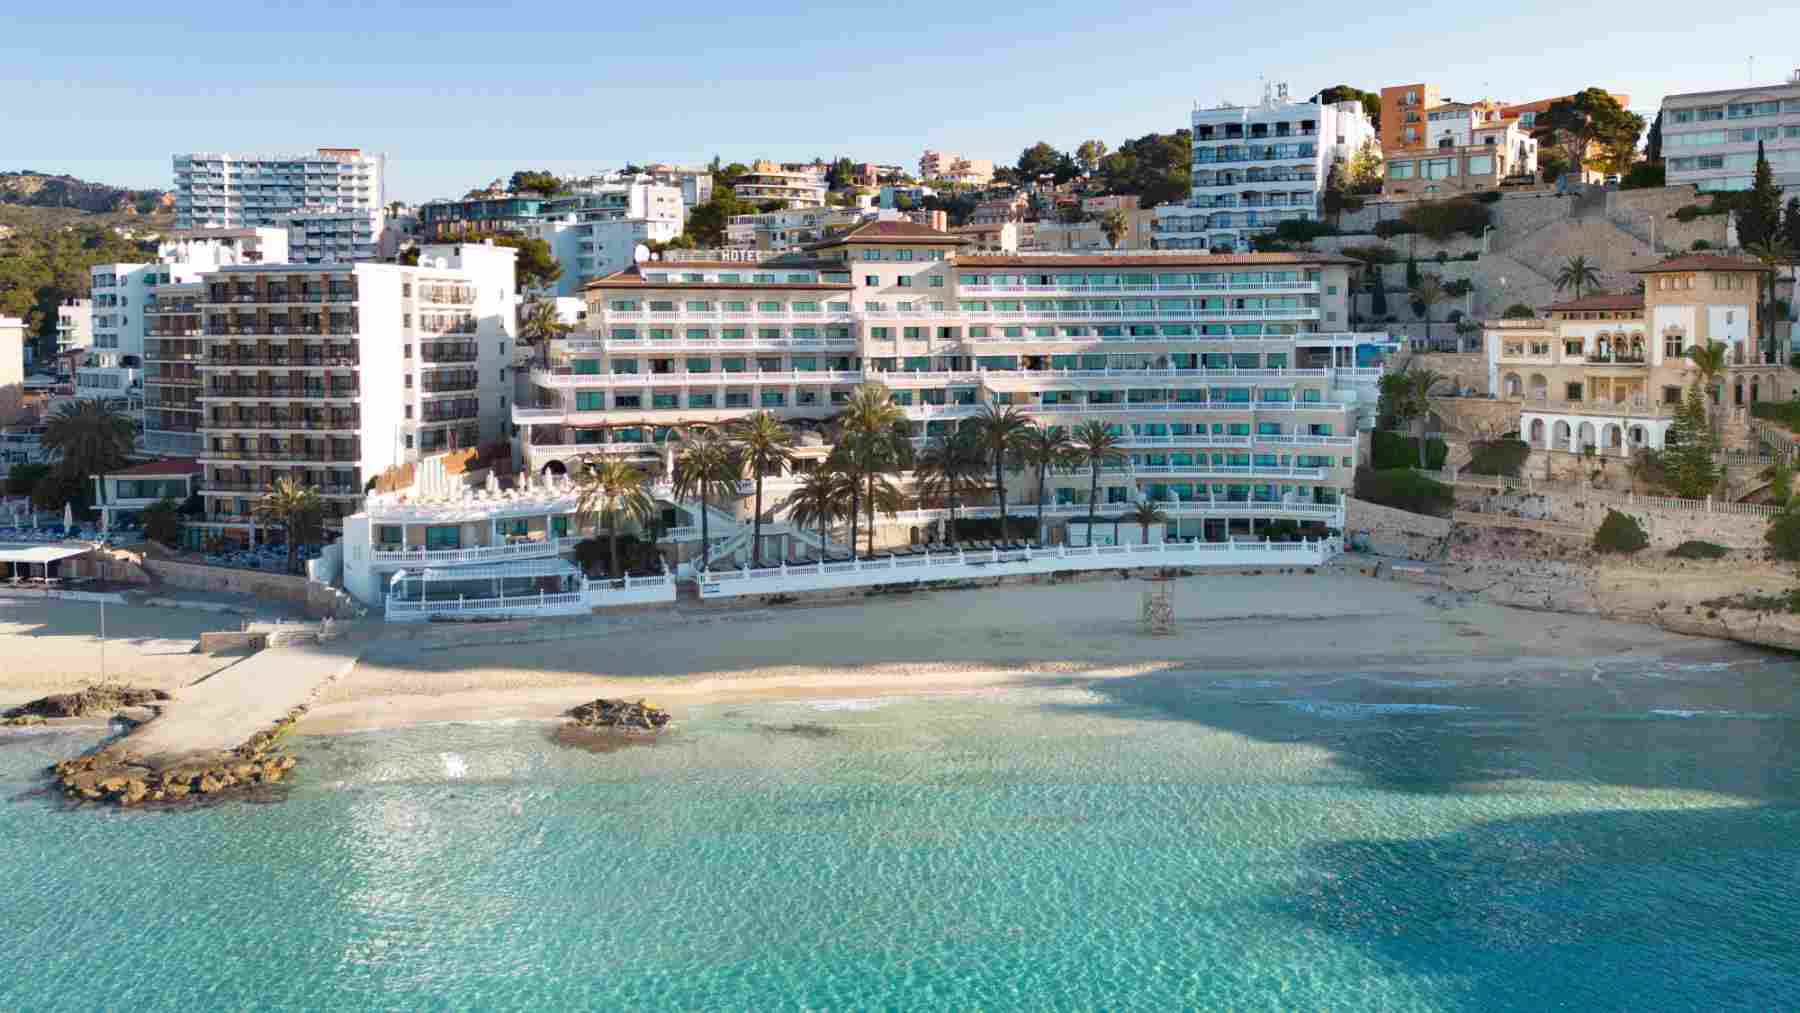 El Hotel Nixe Palace de Palma, un cinco estrellas de la cadena Santos.